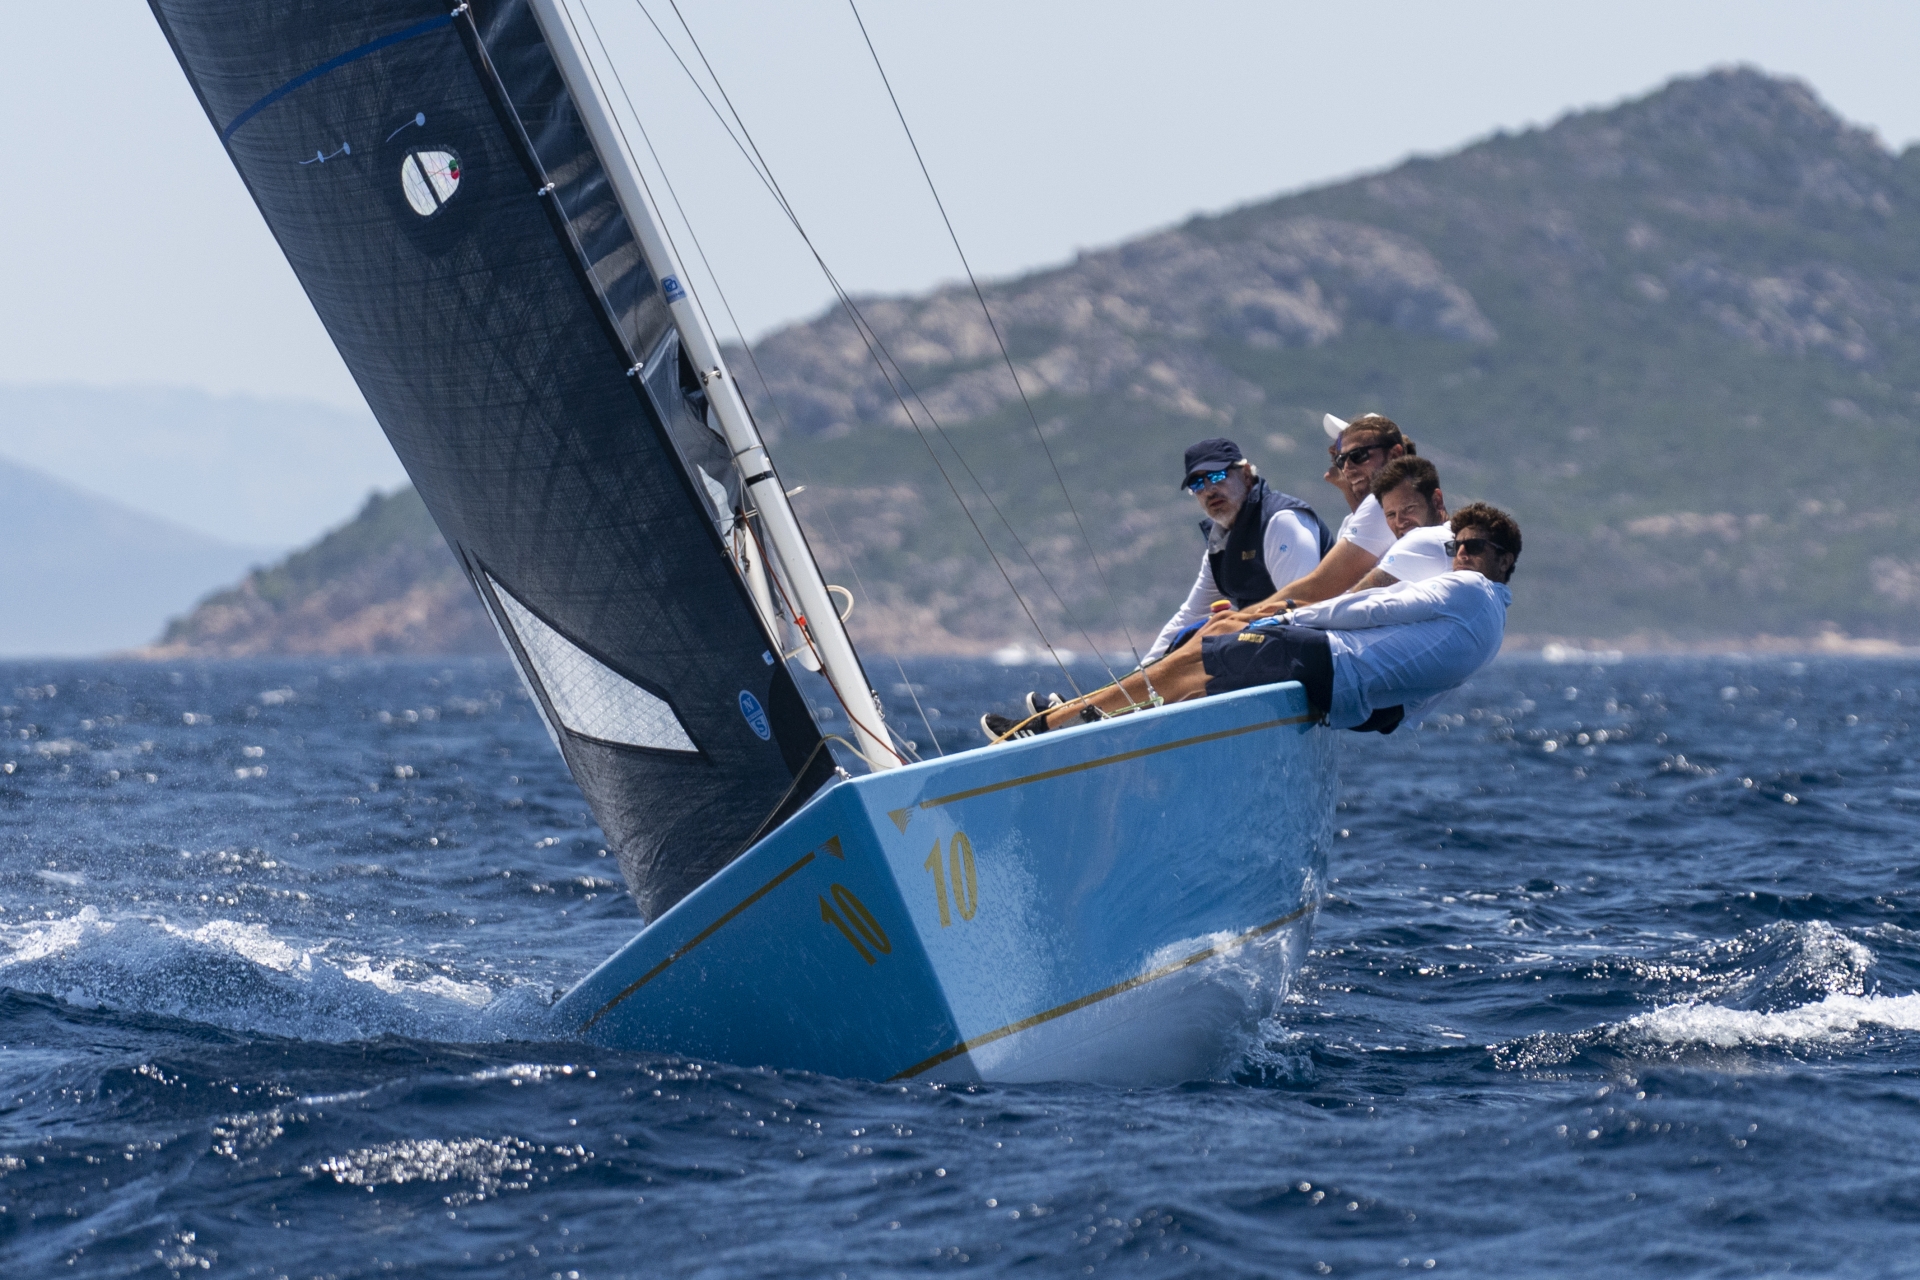 Django vince la 21^ edizione della Coppa Europa Smeralda 888 - NEWS - Yacht Club Costa Smeralda